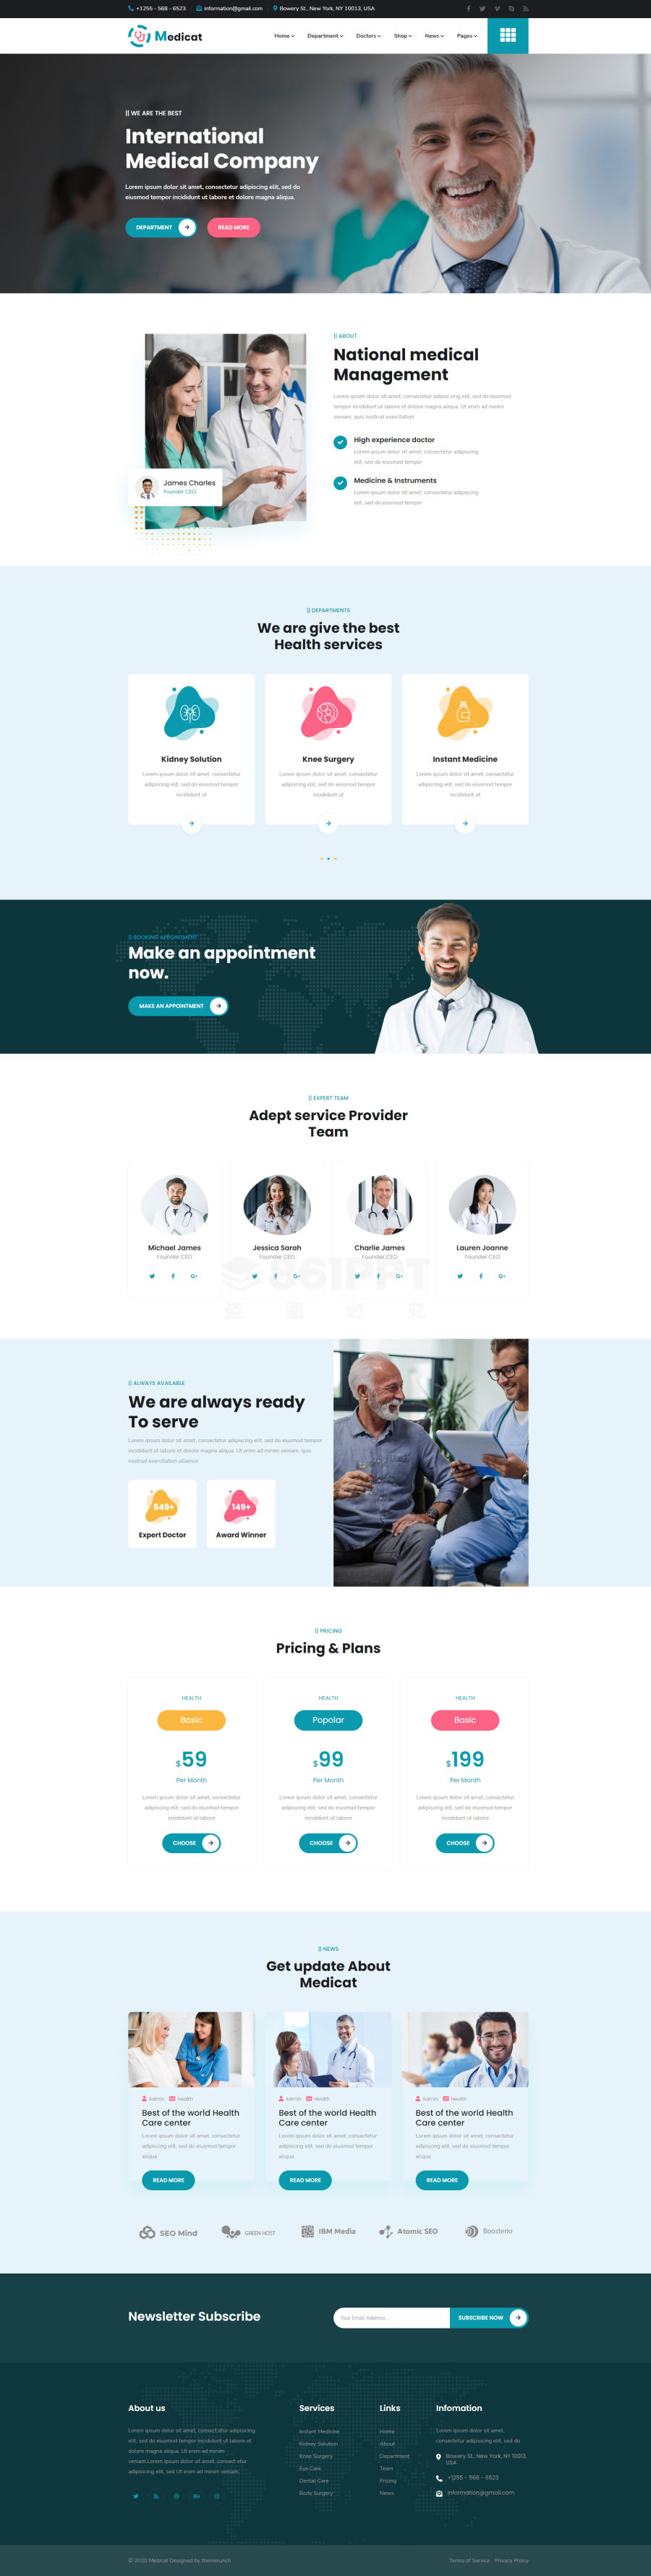 Medicat国外健康医疗服务公司网站模板html5